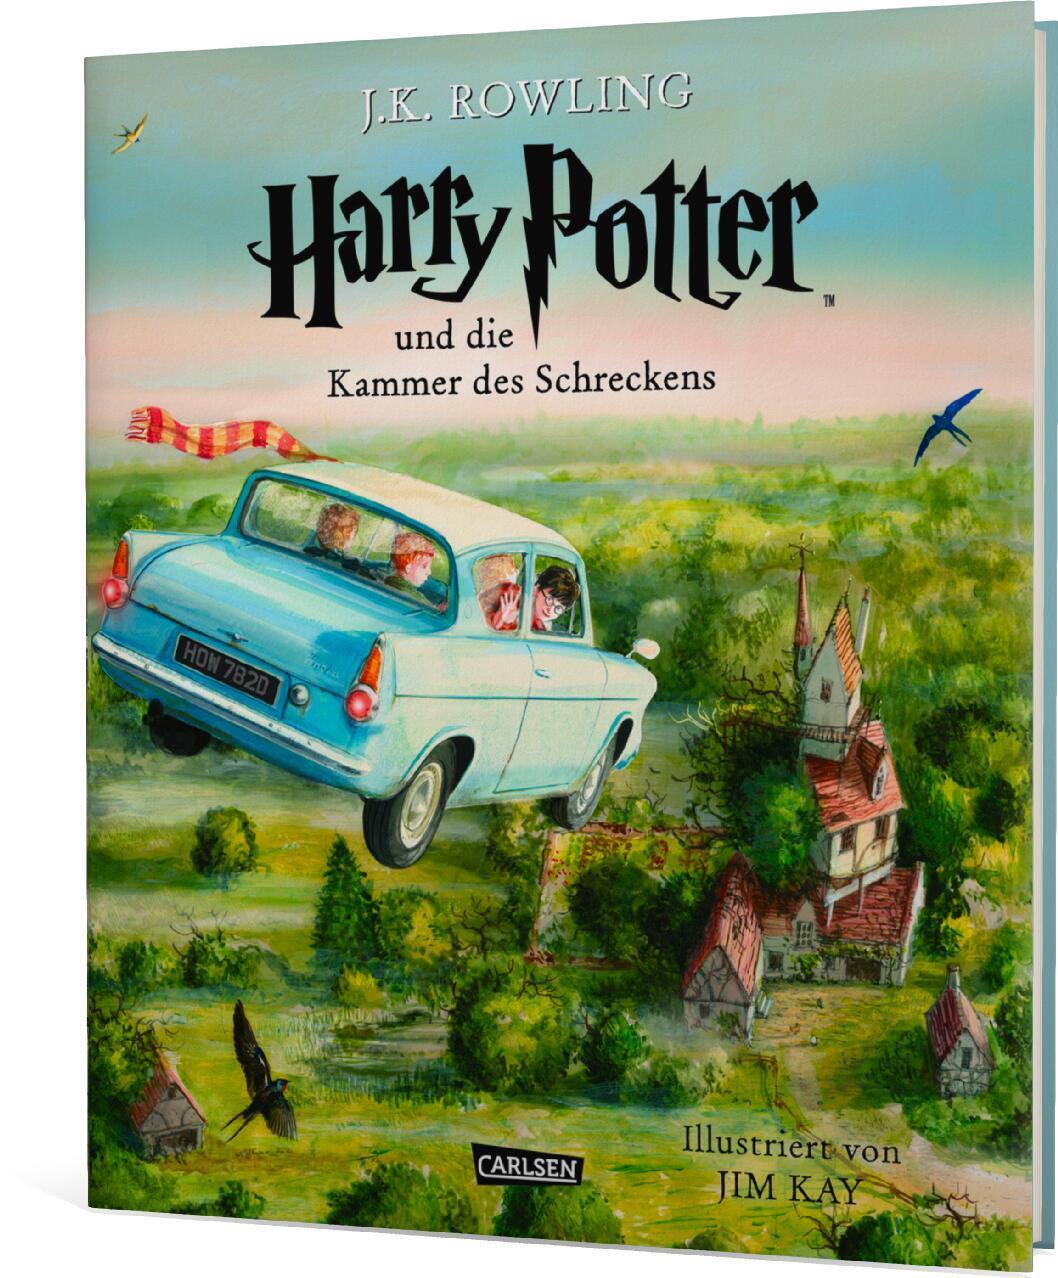 Harry Potter 2 und die Kammer des Schreckens. Schmuckausgabe - Rowling, Joanne K.